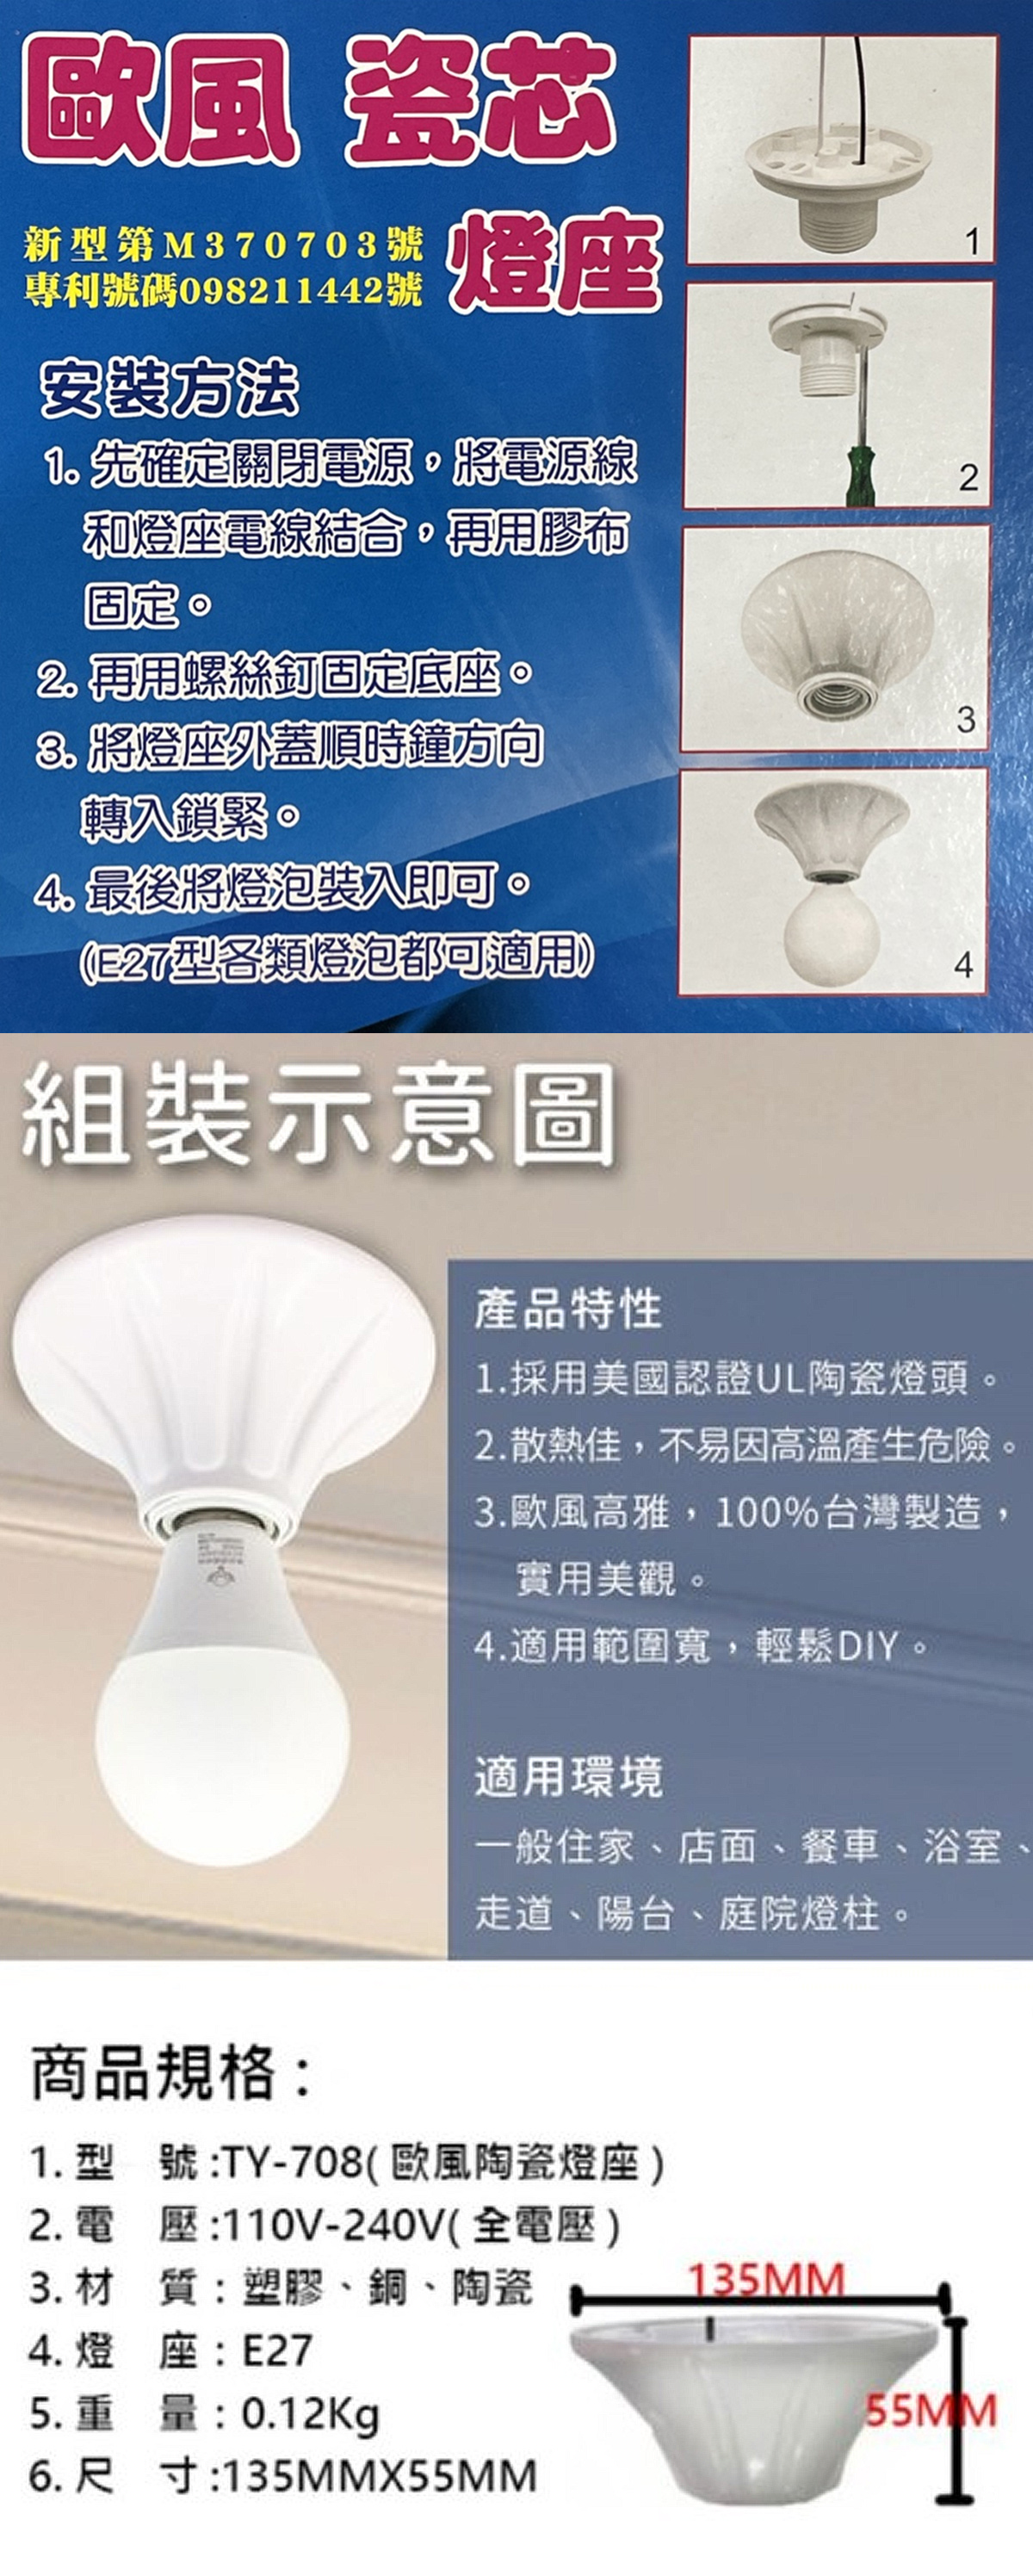 LED E27 歐風瓷芯燈座 簡易燈座